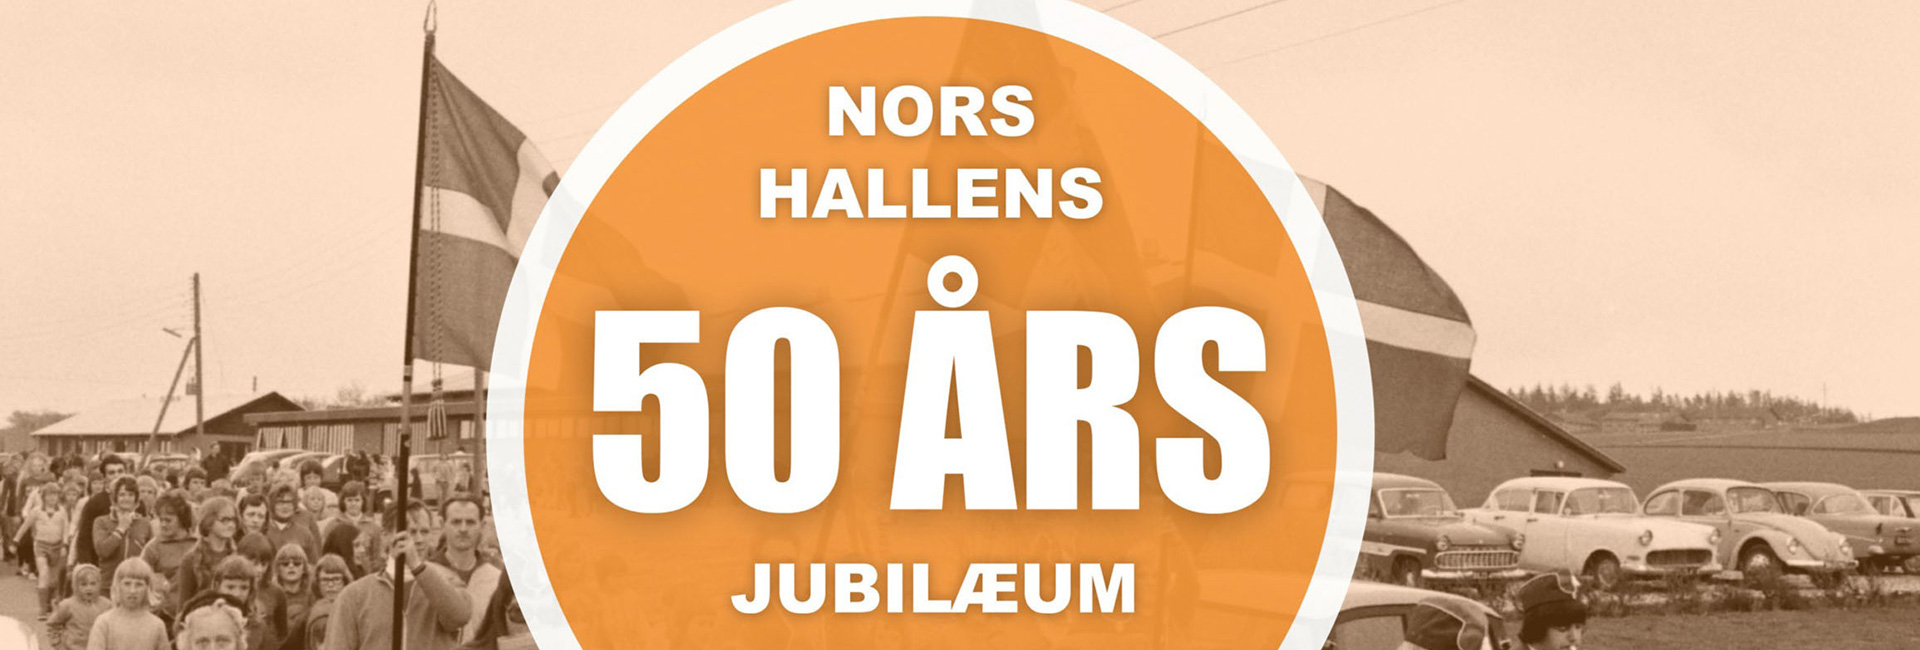 thy-event-nors-hallen-50-aars-jubilaeum-2024-topslide-1920x650.jpg